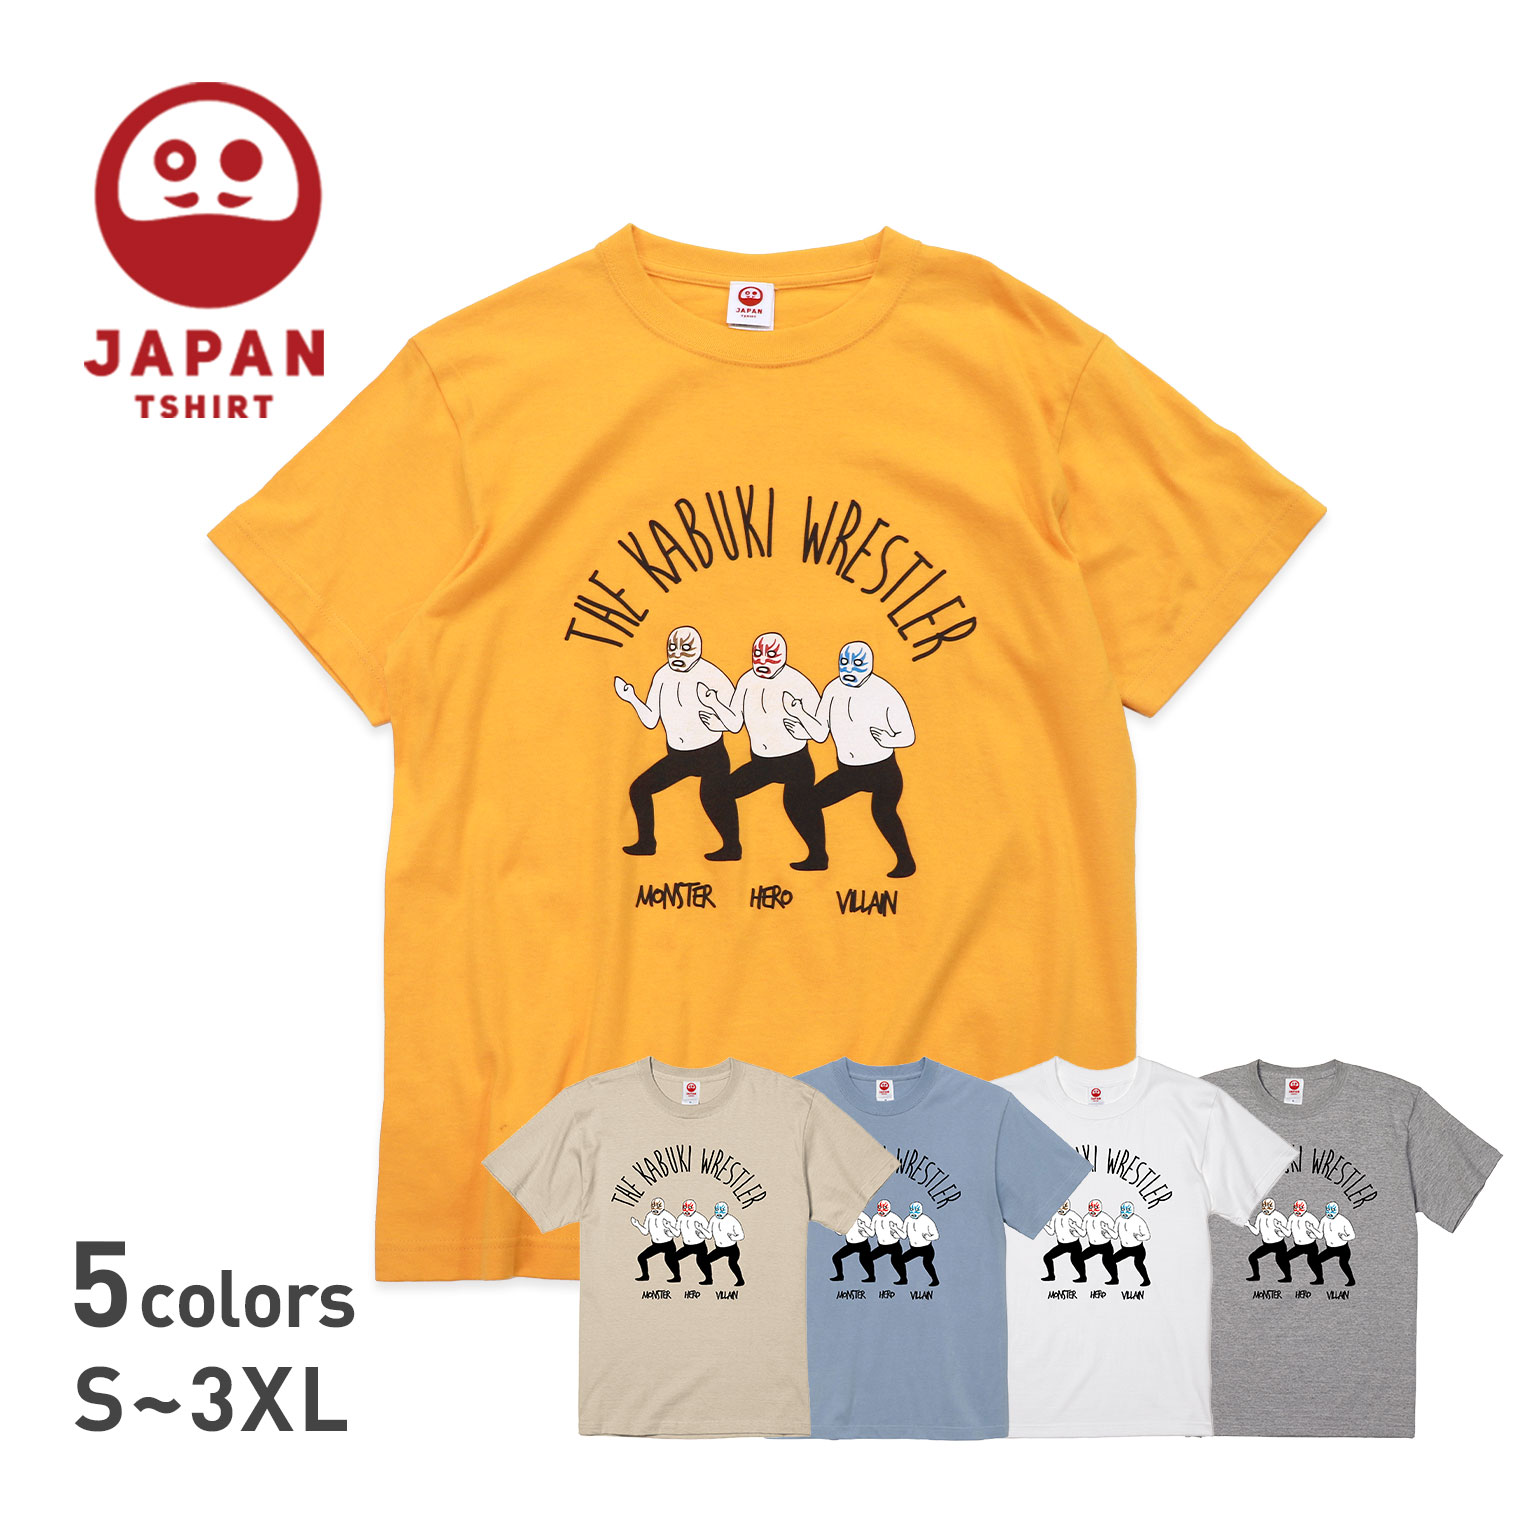  Tシャツ 綿100% ゴールド 半袖 プリント イラスト 歌舞伎 プロレス プロレスラー レスラー メンズ レディース オレンジ 和 かわいい 大きいサイズ